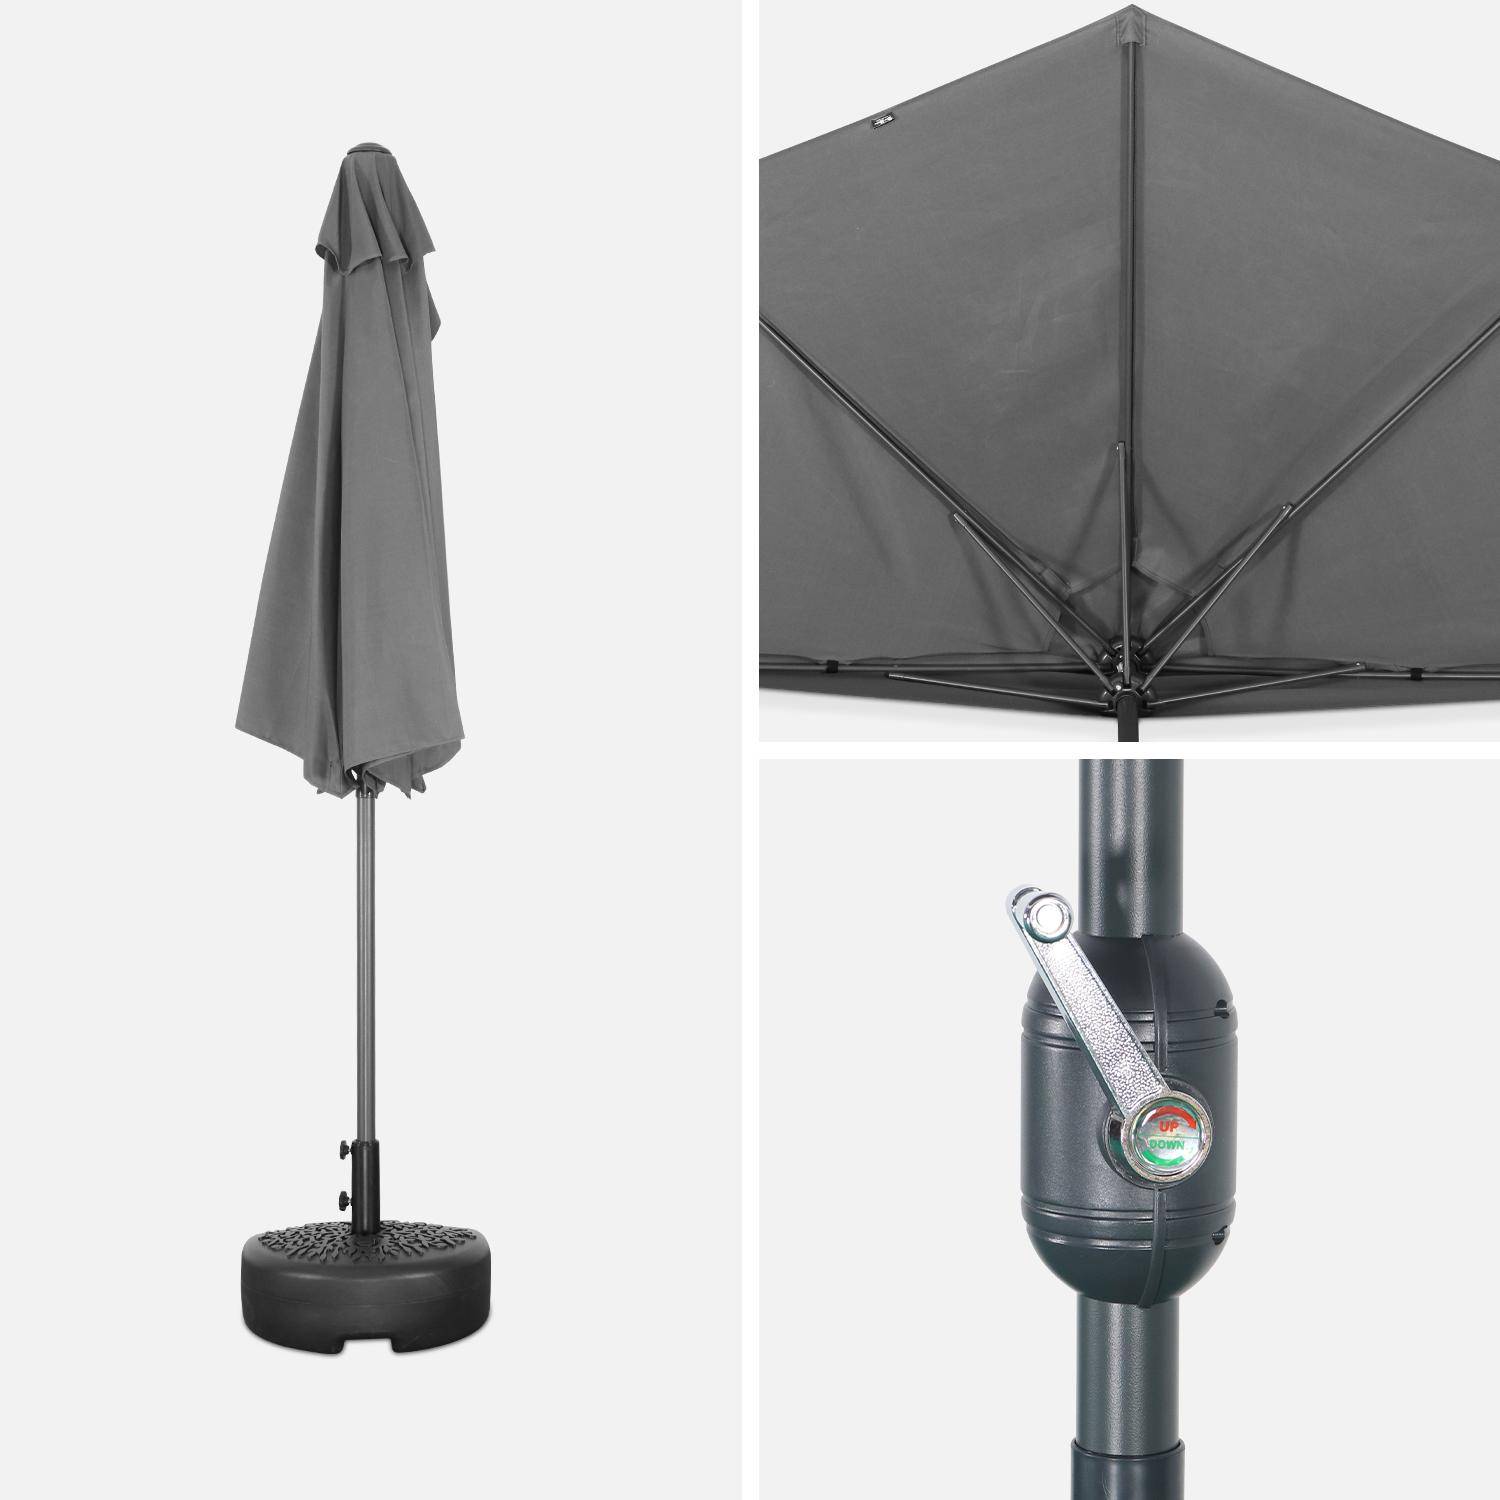  Parasol para balcón Ø250cm - CALVI - Medio parasol recto, mástil de aluminio con manivela, tejido gris Photo5